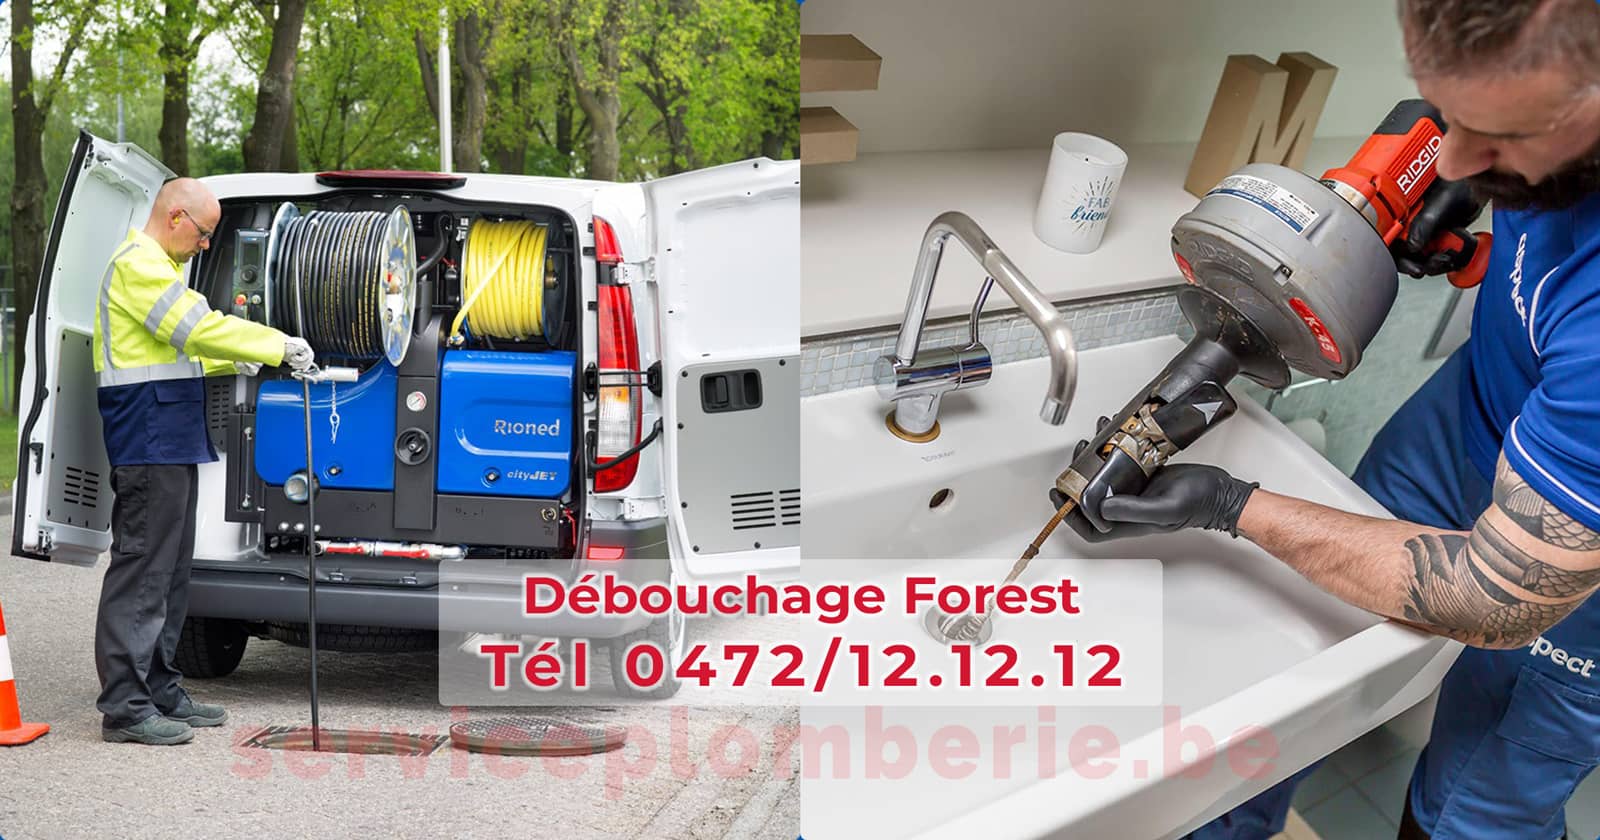 Débouchage Forest d'égout Service Plomberie Tél 0472/12.12.12